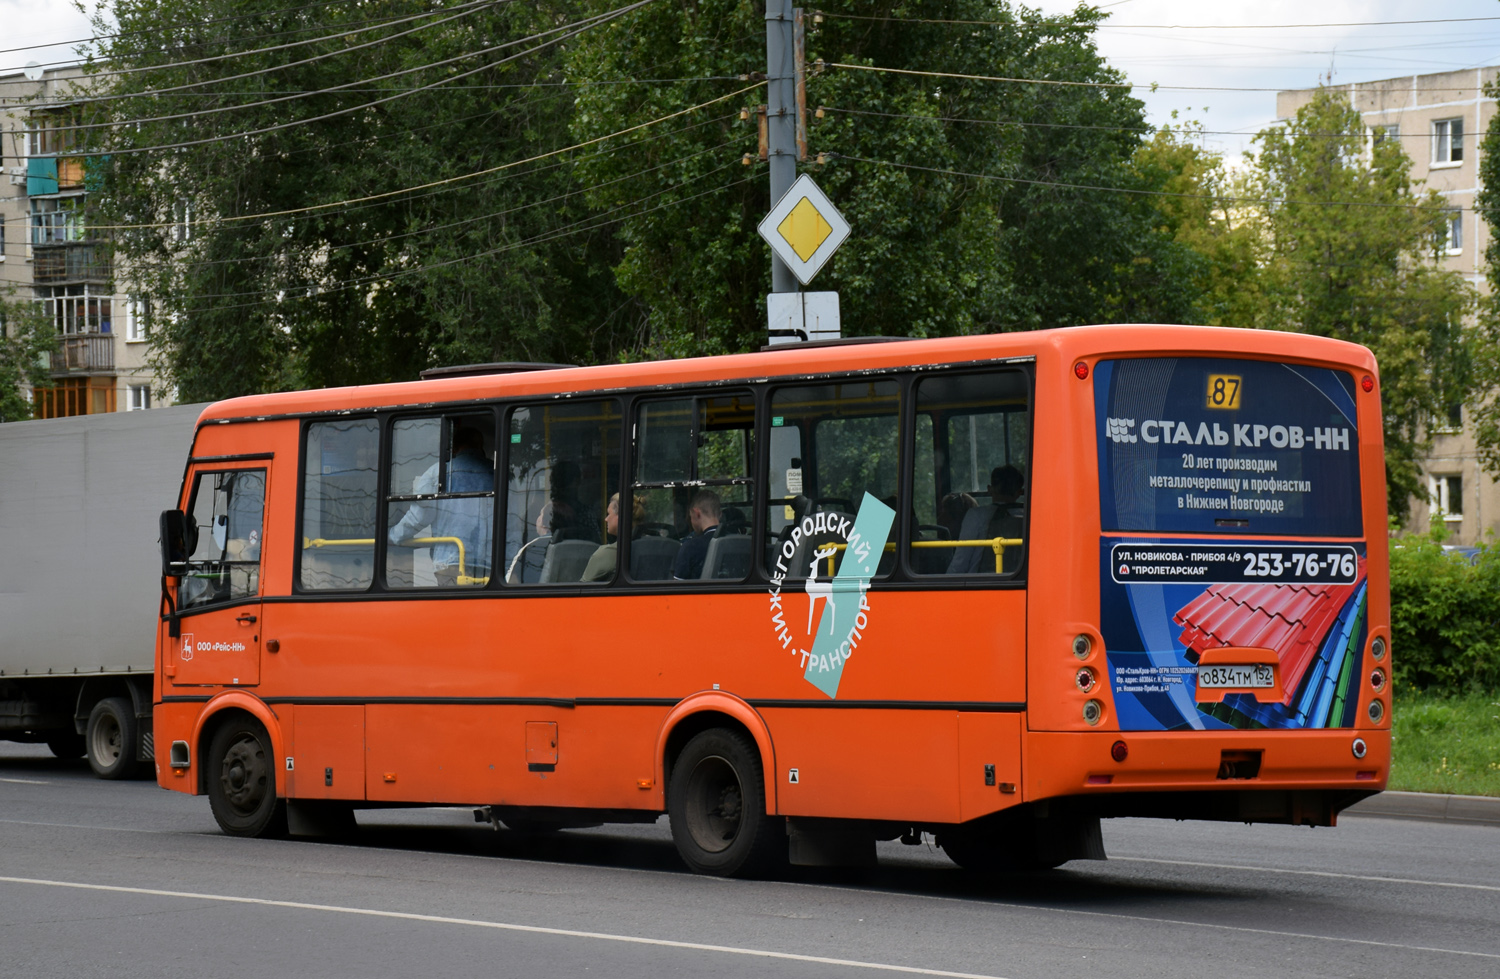 Nizhegorodskaya region, PAZ-320414-05 "Vektor" Nr. О 834 ТМ 152